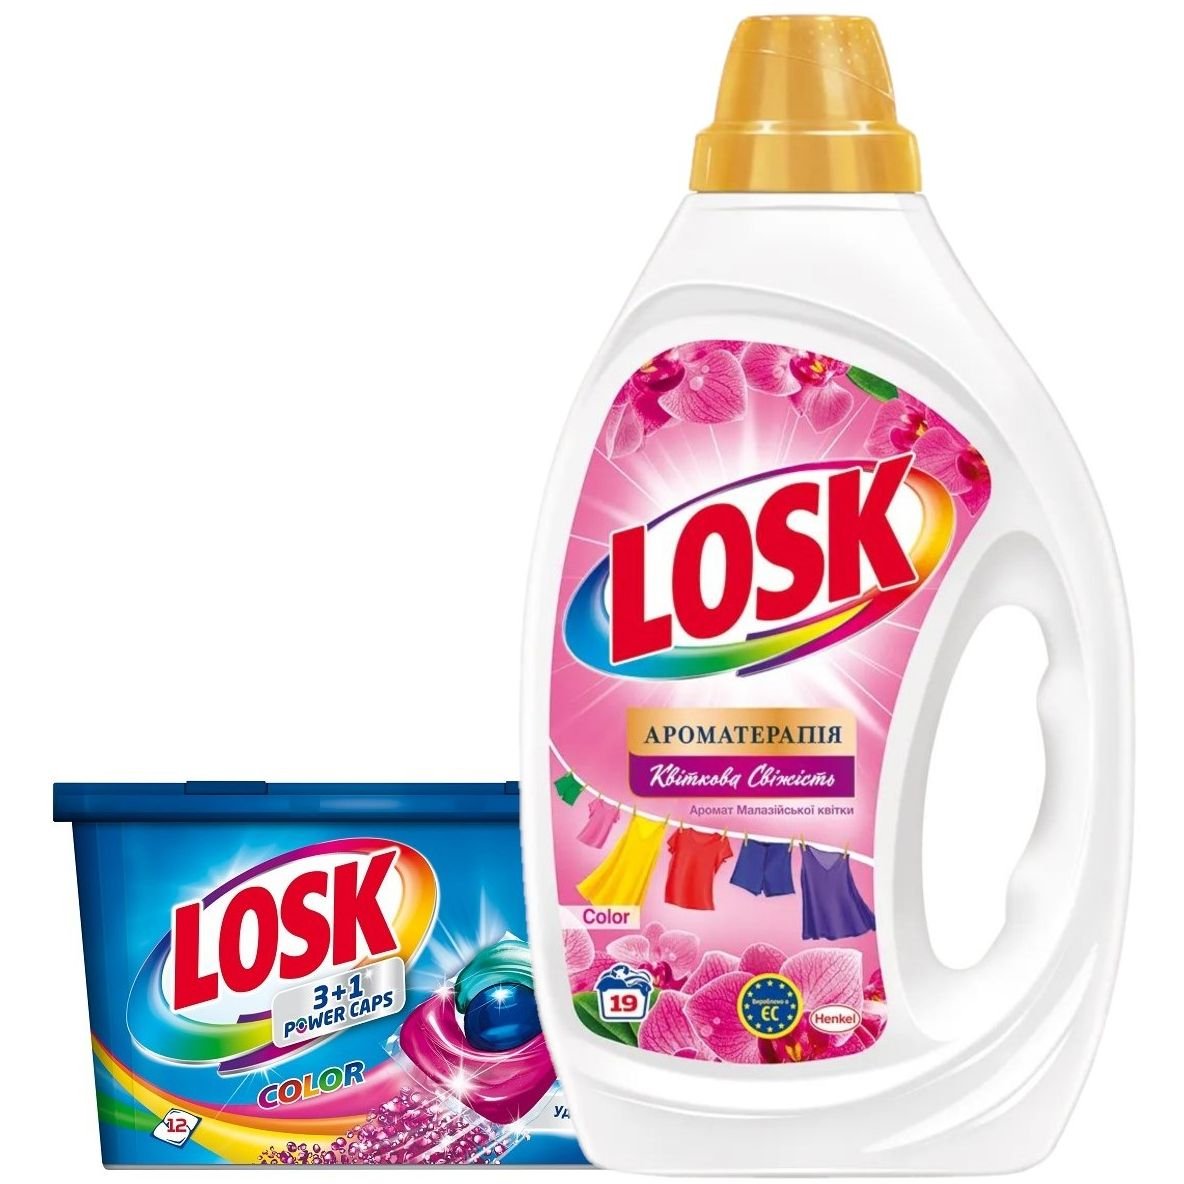 Набор Losk: Капсулы для стирки Losk Color 3в1, 12 шт. + Гель для стирки Losk Color Ароматерапия Эфирные масла и аромат Малайзийского цветка, 855 мл - фото 1